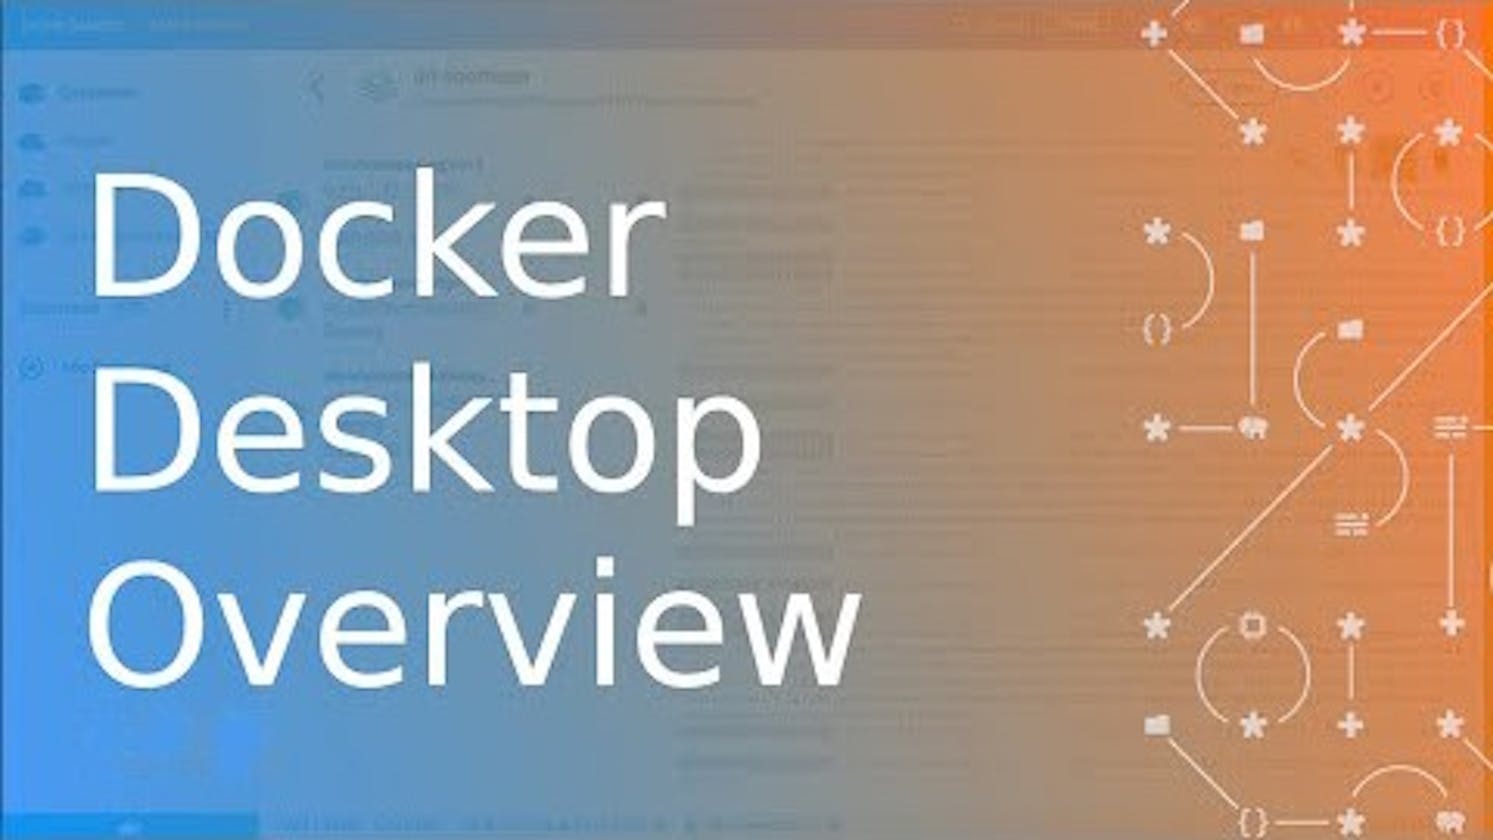 Overview of Docker Desktop